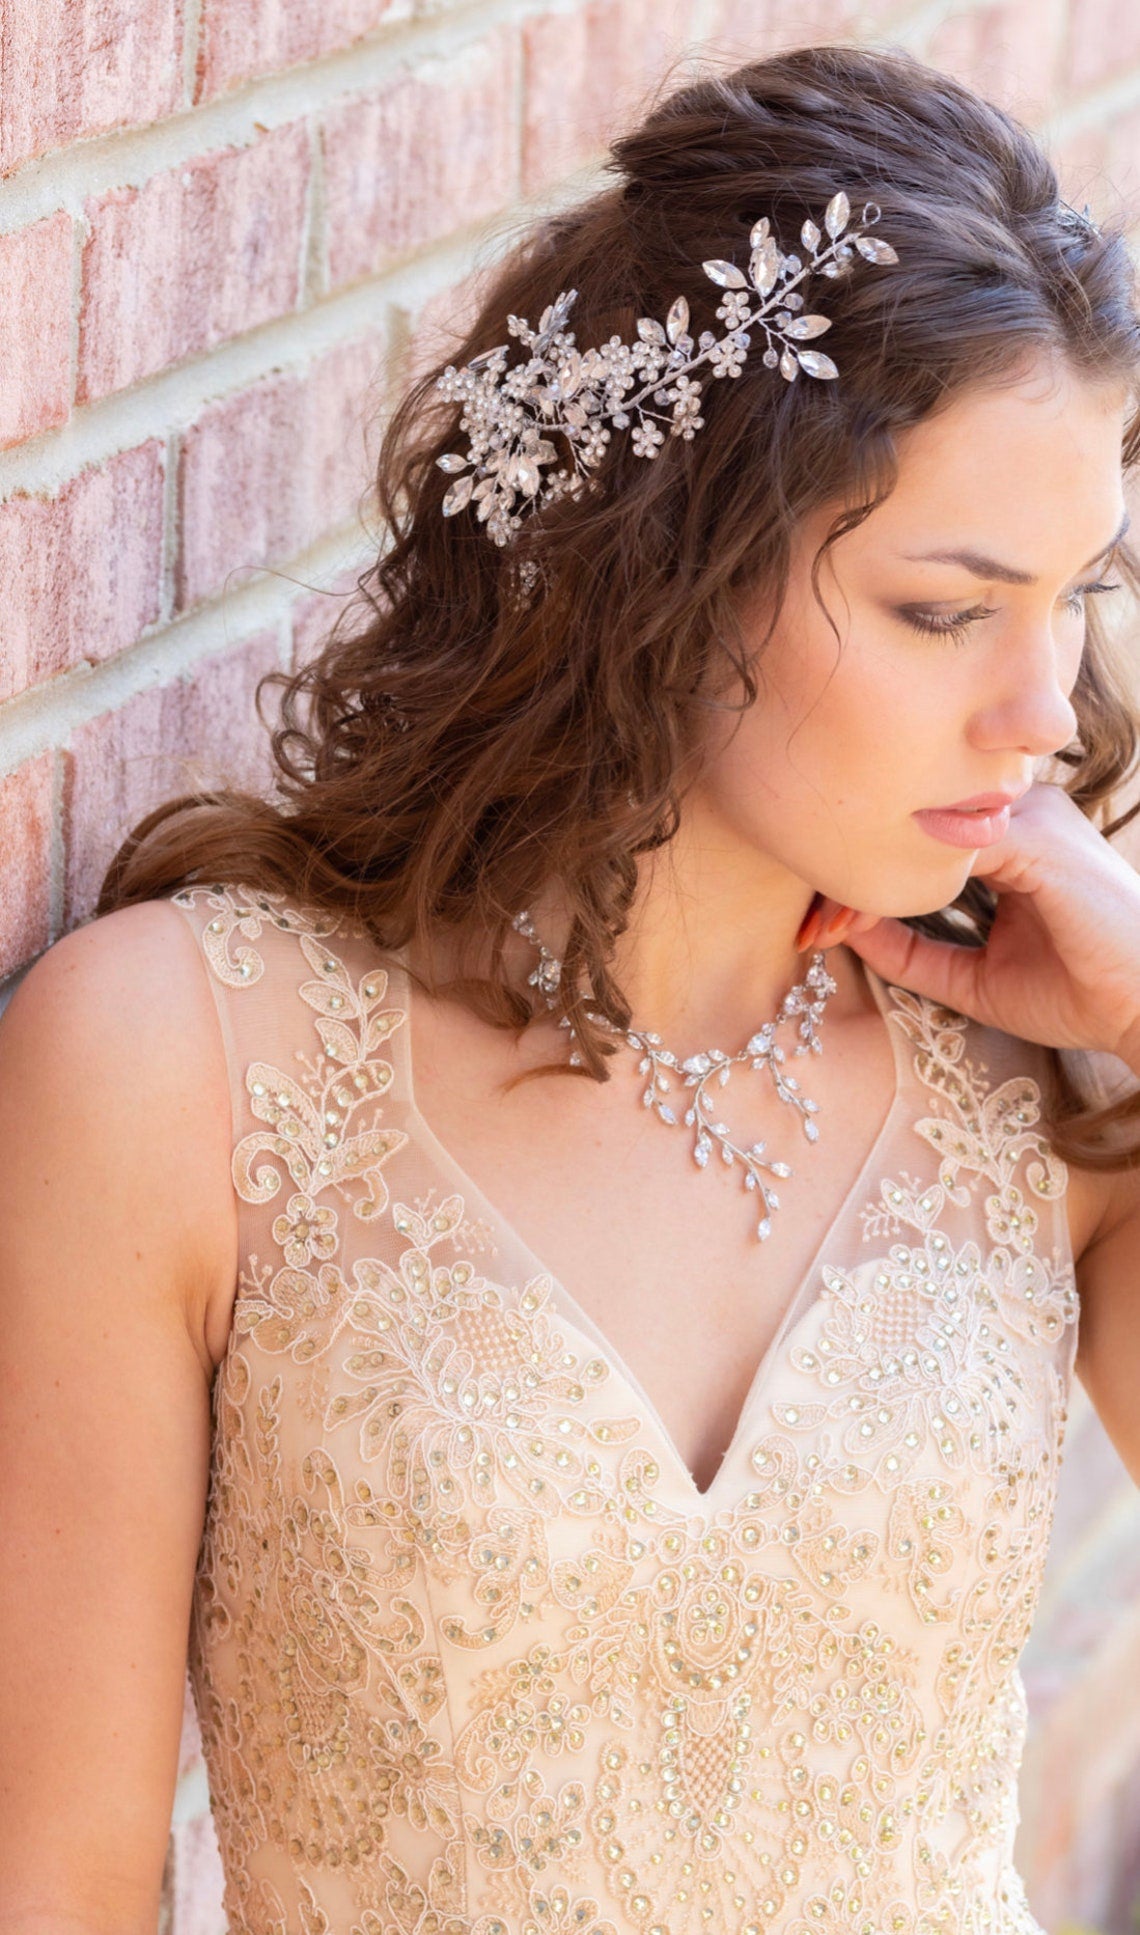 Daniela- Dazzling set of 2 crystal floral wedding headpiece